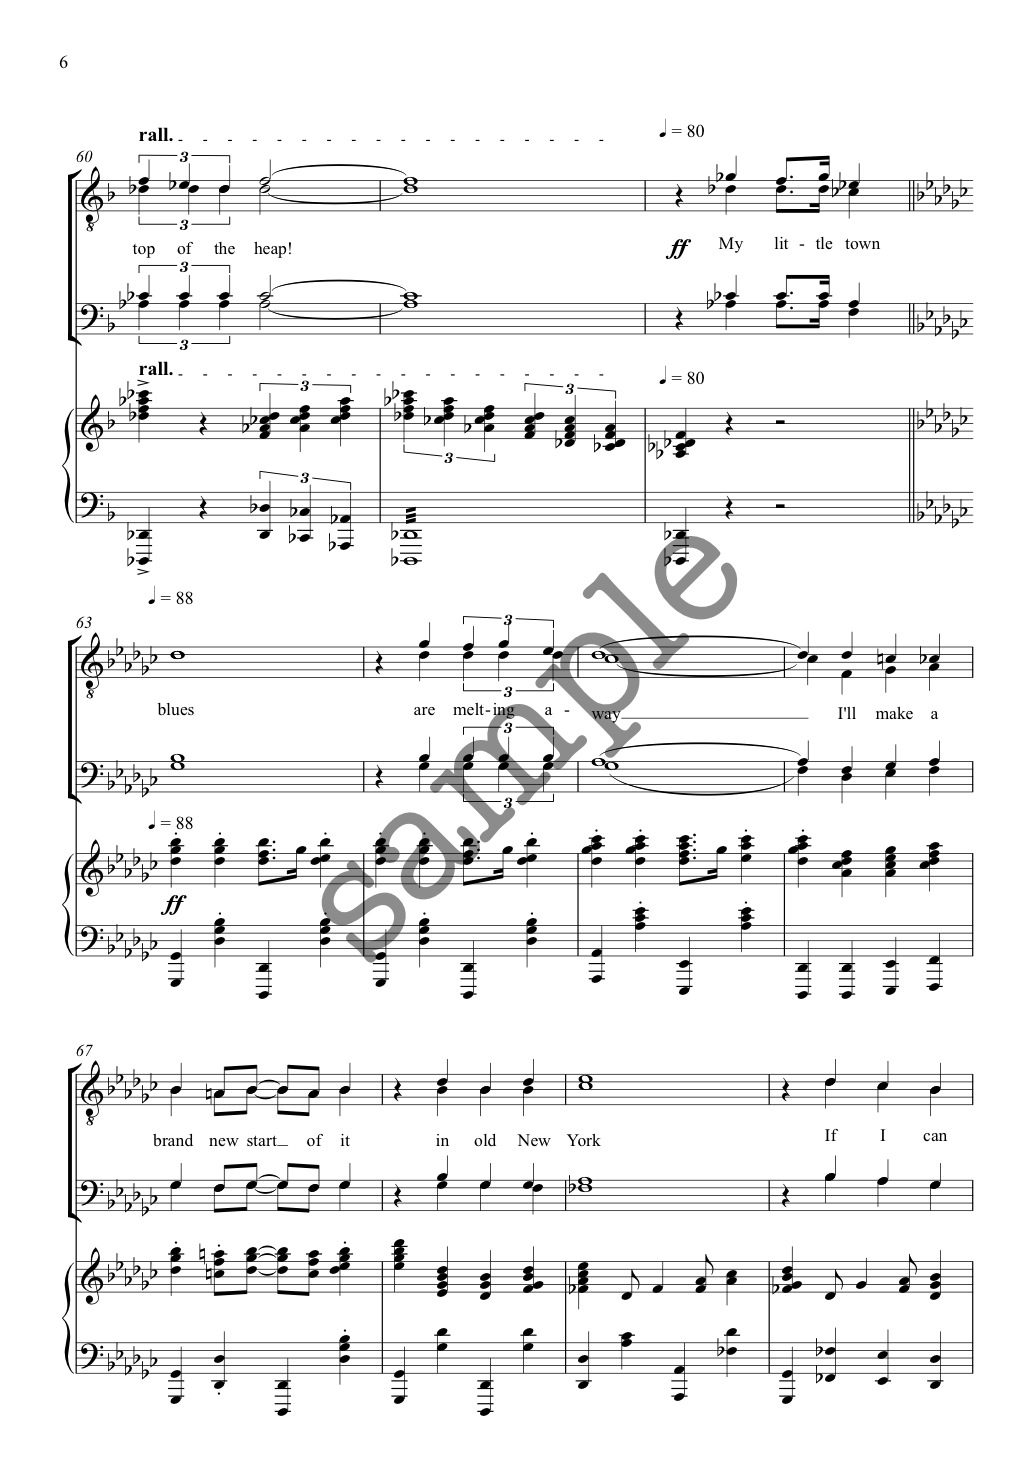 New York, New York - TTBB - Alan Simmons Music - Choral Sheet Music for ...